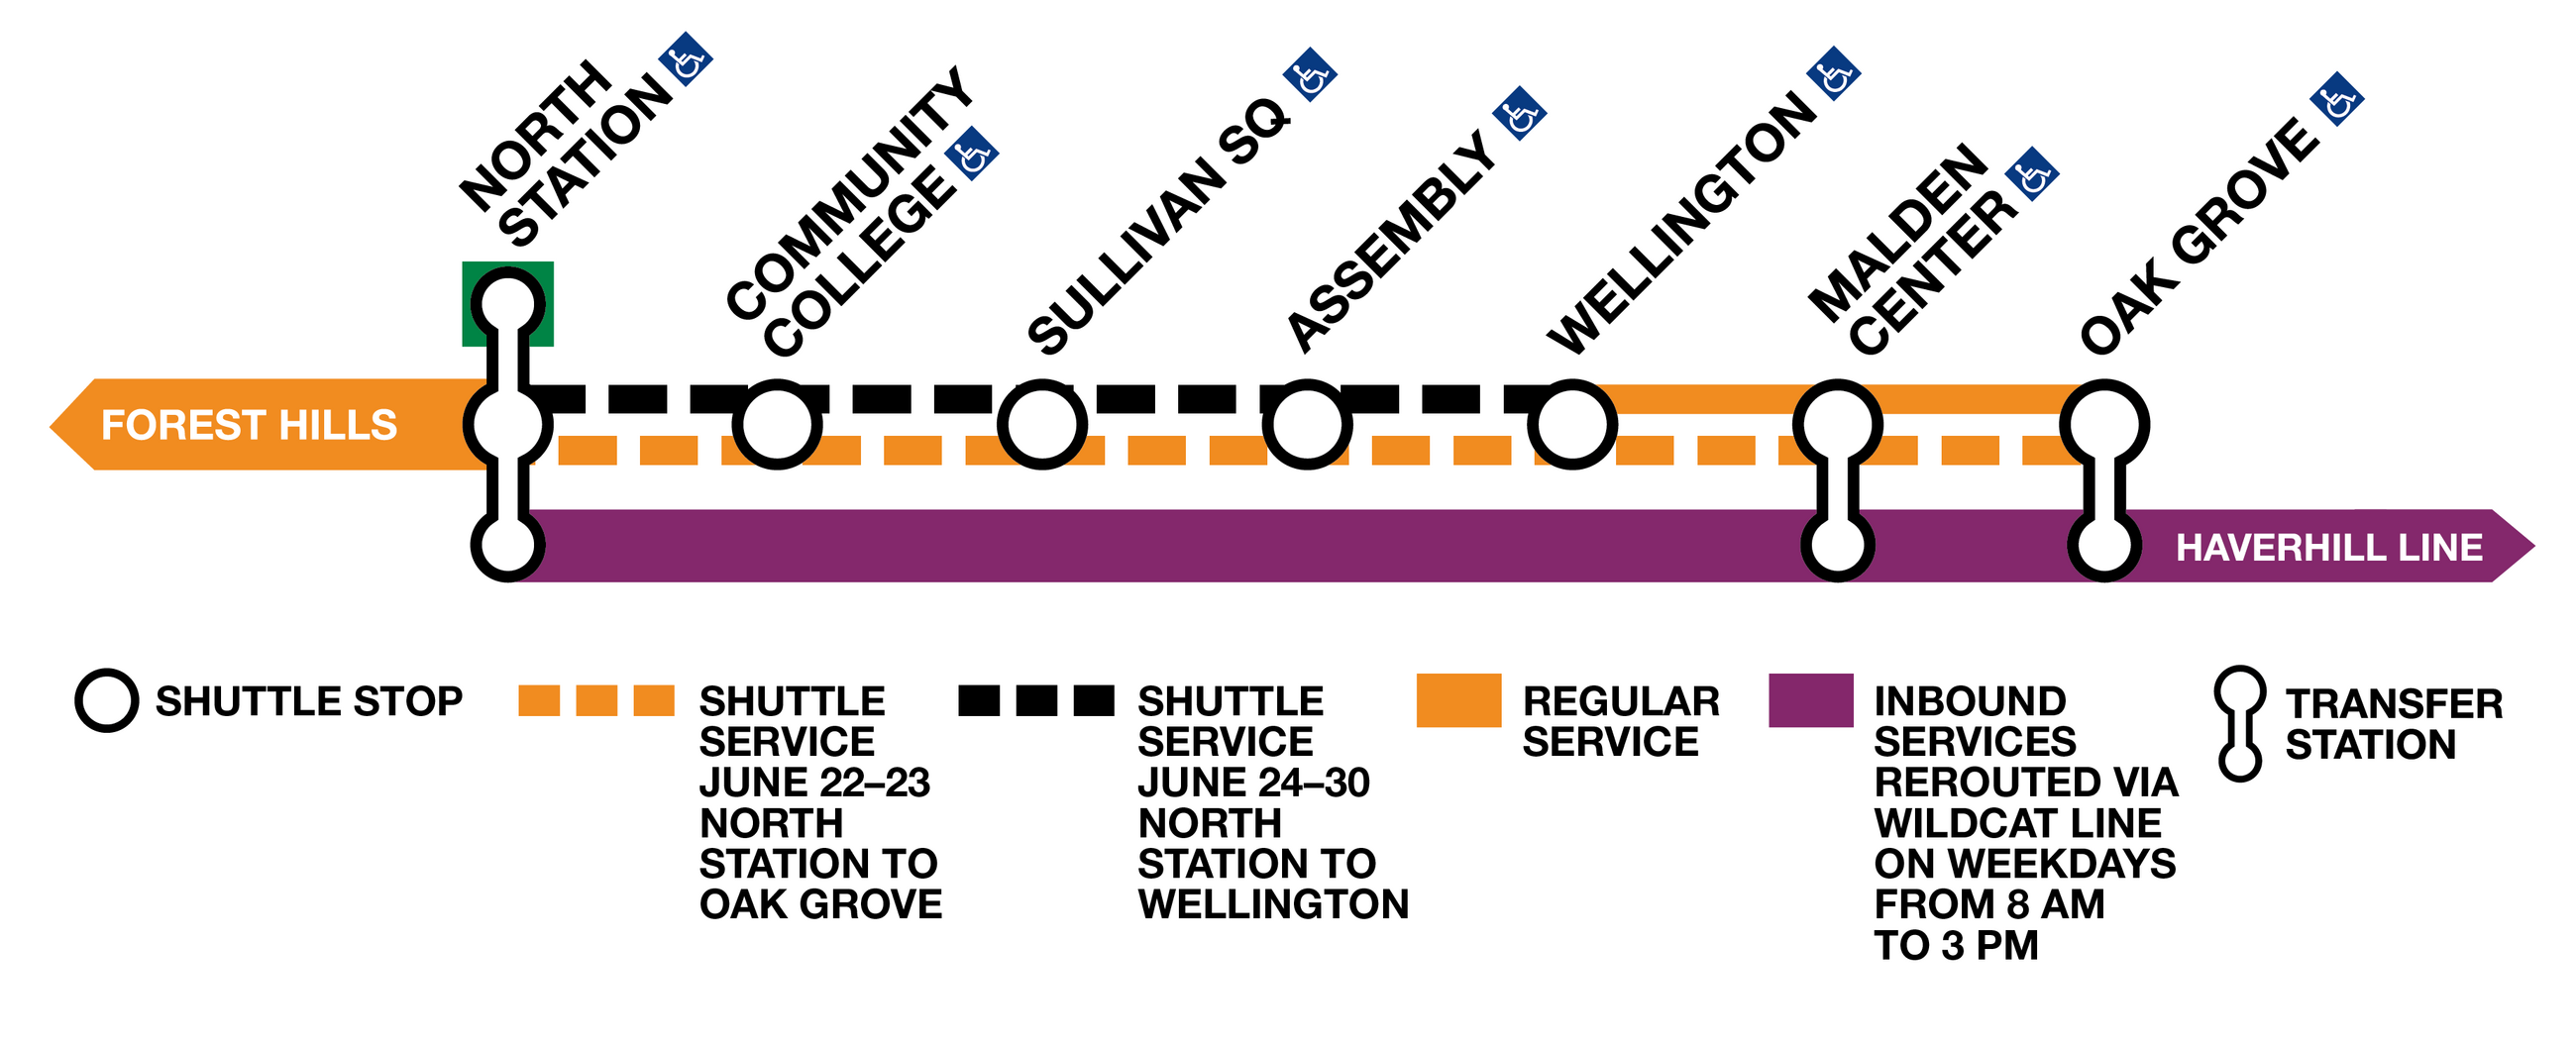 Orange Line diversion diagram depicting Oak Grove and Wellington shuttle service 